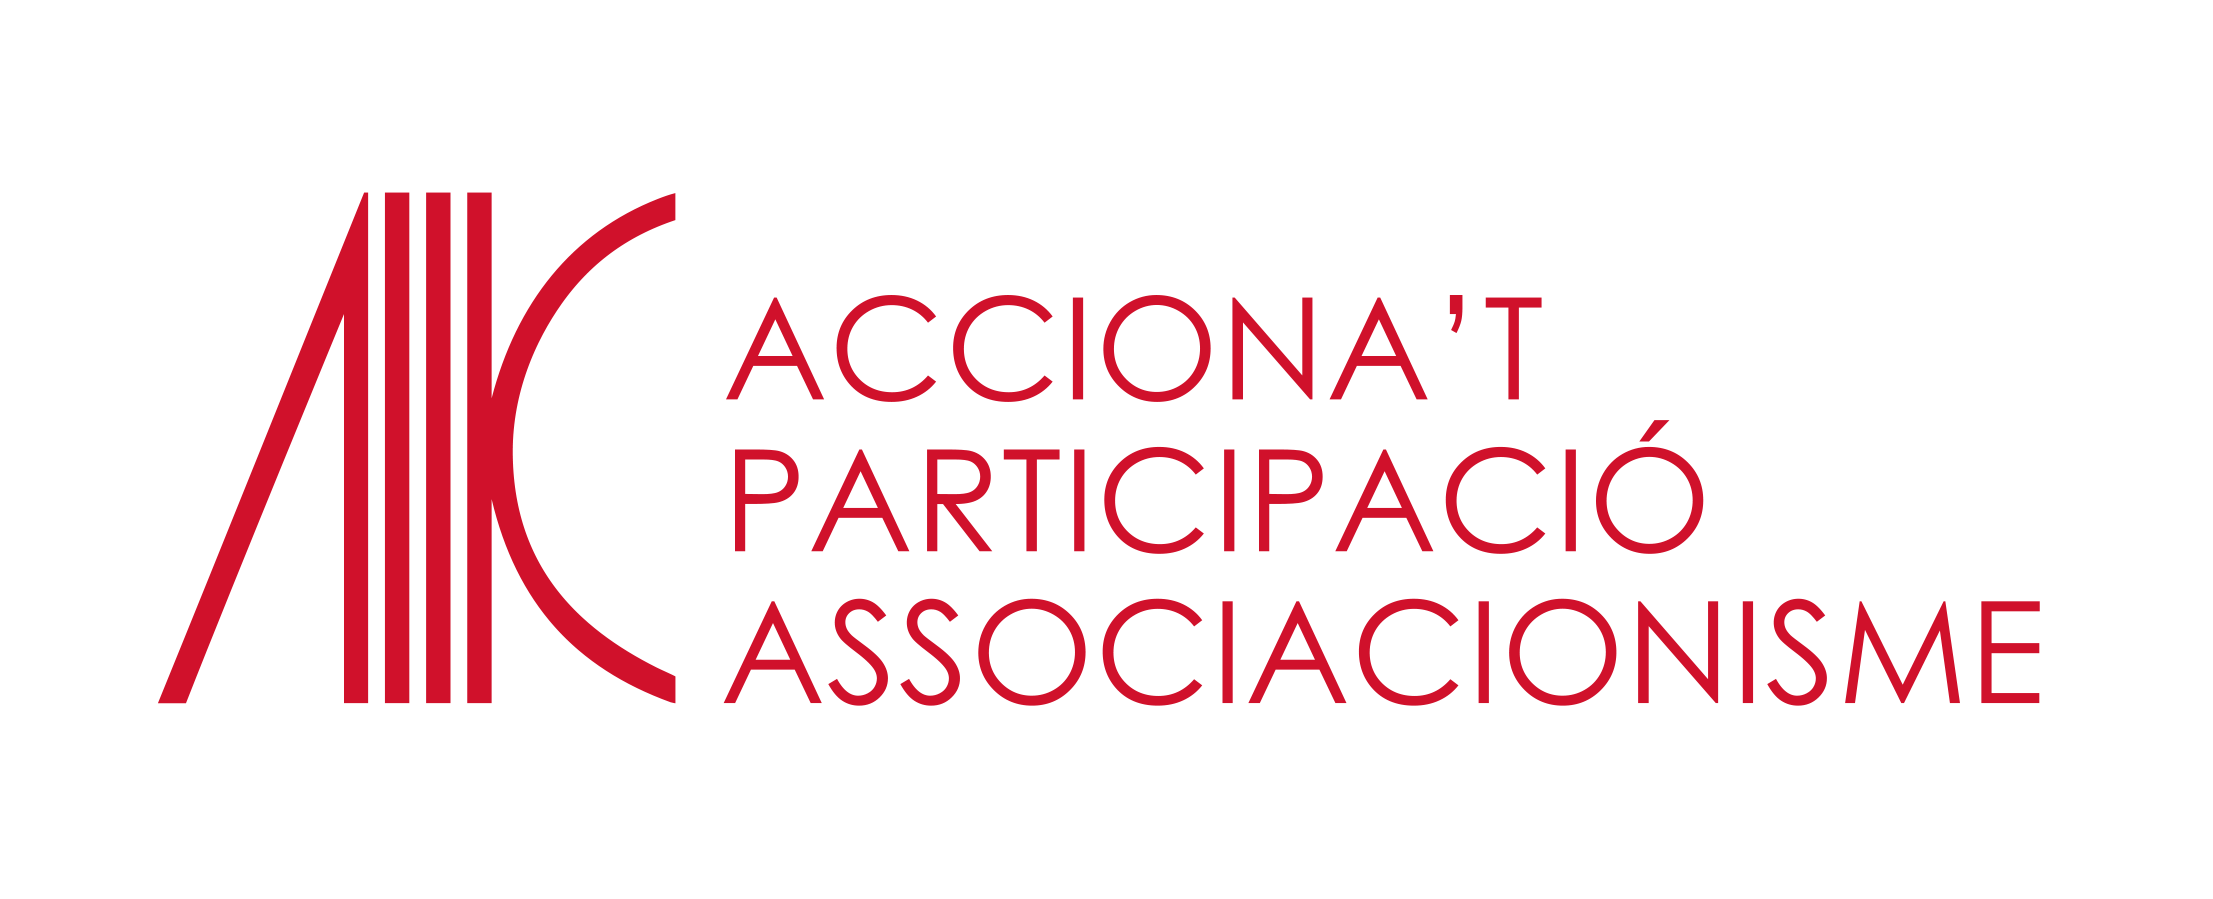 ACCIONA'T - Participació i associacionisme